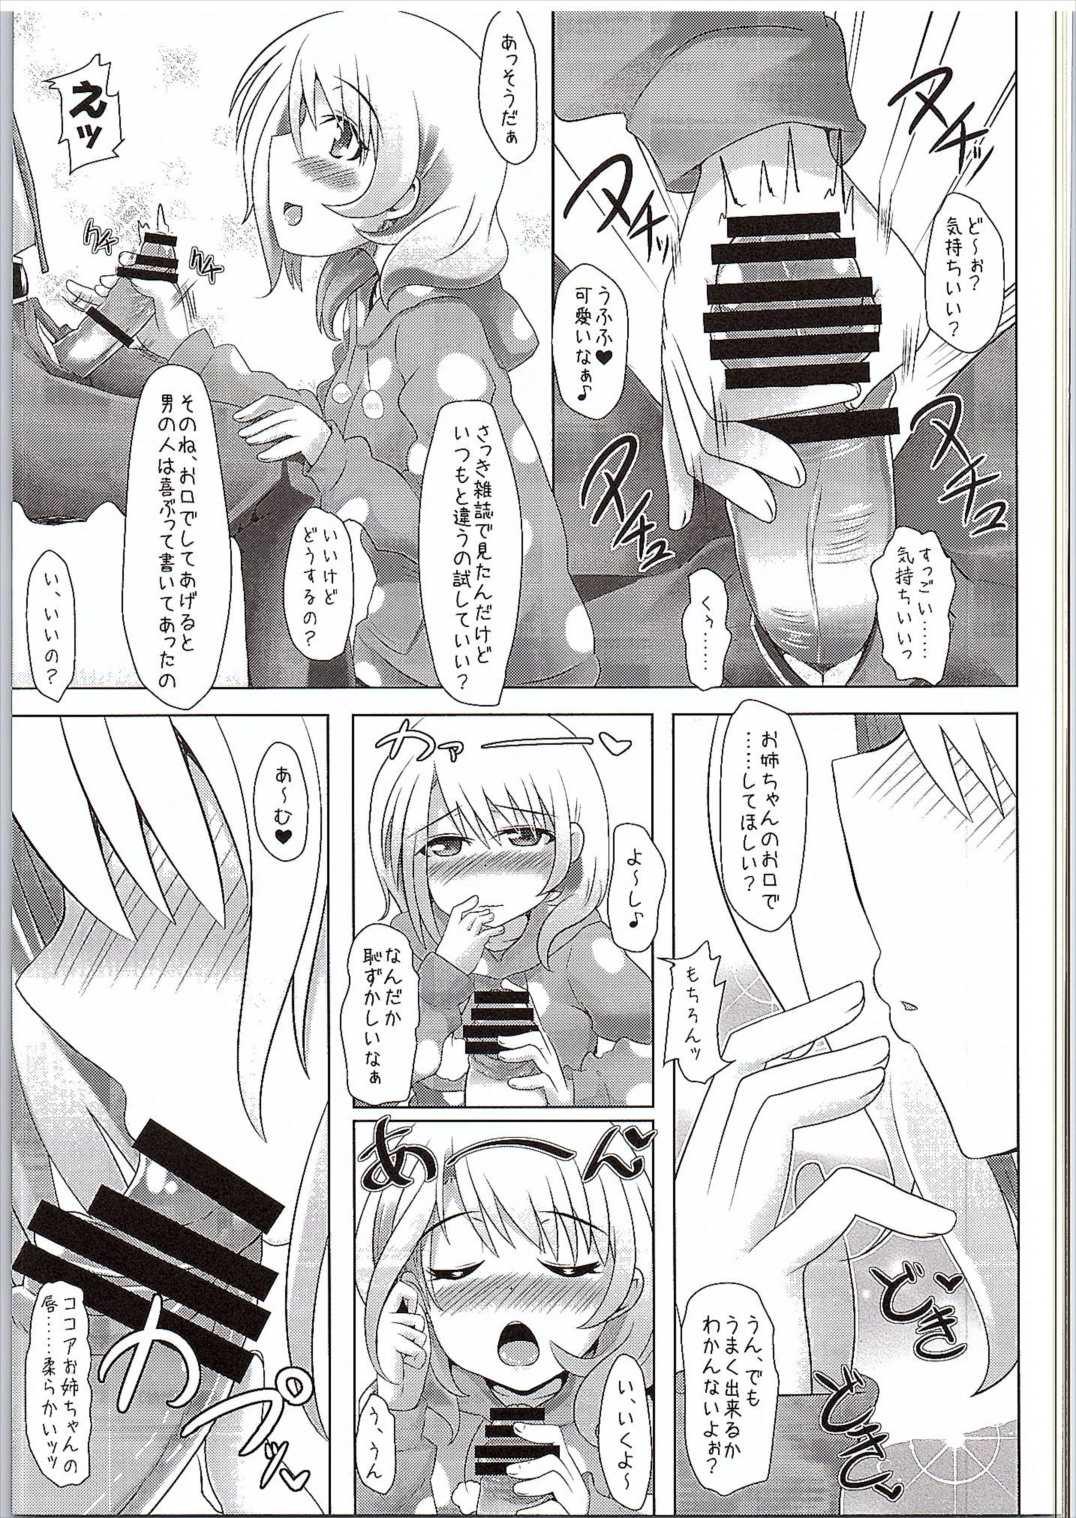 Metendo (SC2016 Winter) [Toculitoc (Tokurito)] Kokoa Onee-chan (Toshishita) ni Amaetainda! (Gochuumon wa Usagi desu ka?) - Gochuumon wa usagi desu ka Morena - Page 4